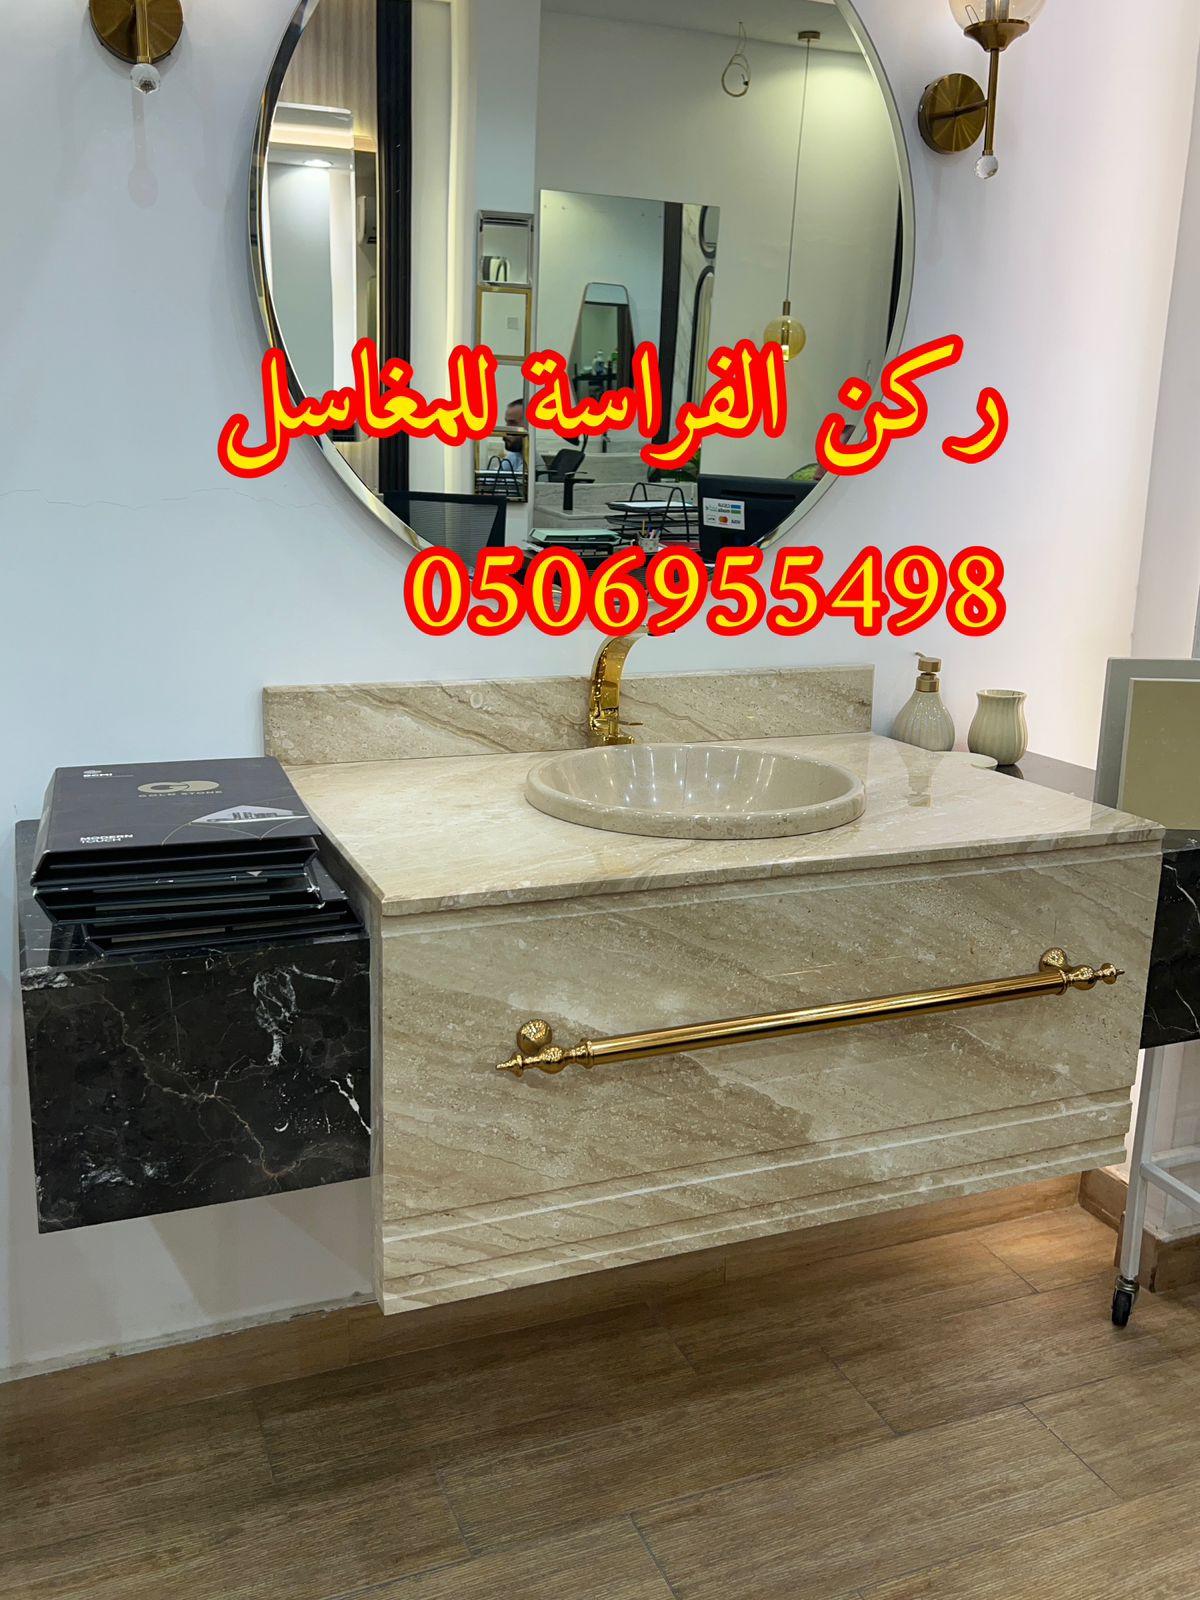 تصاميم مغاسل رخام للمجالس في الرياض,0506955498 915313407